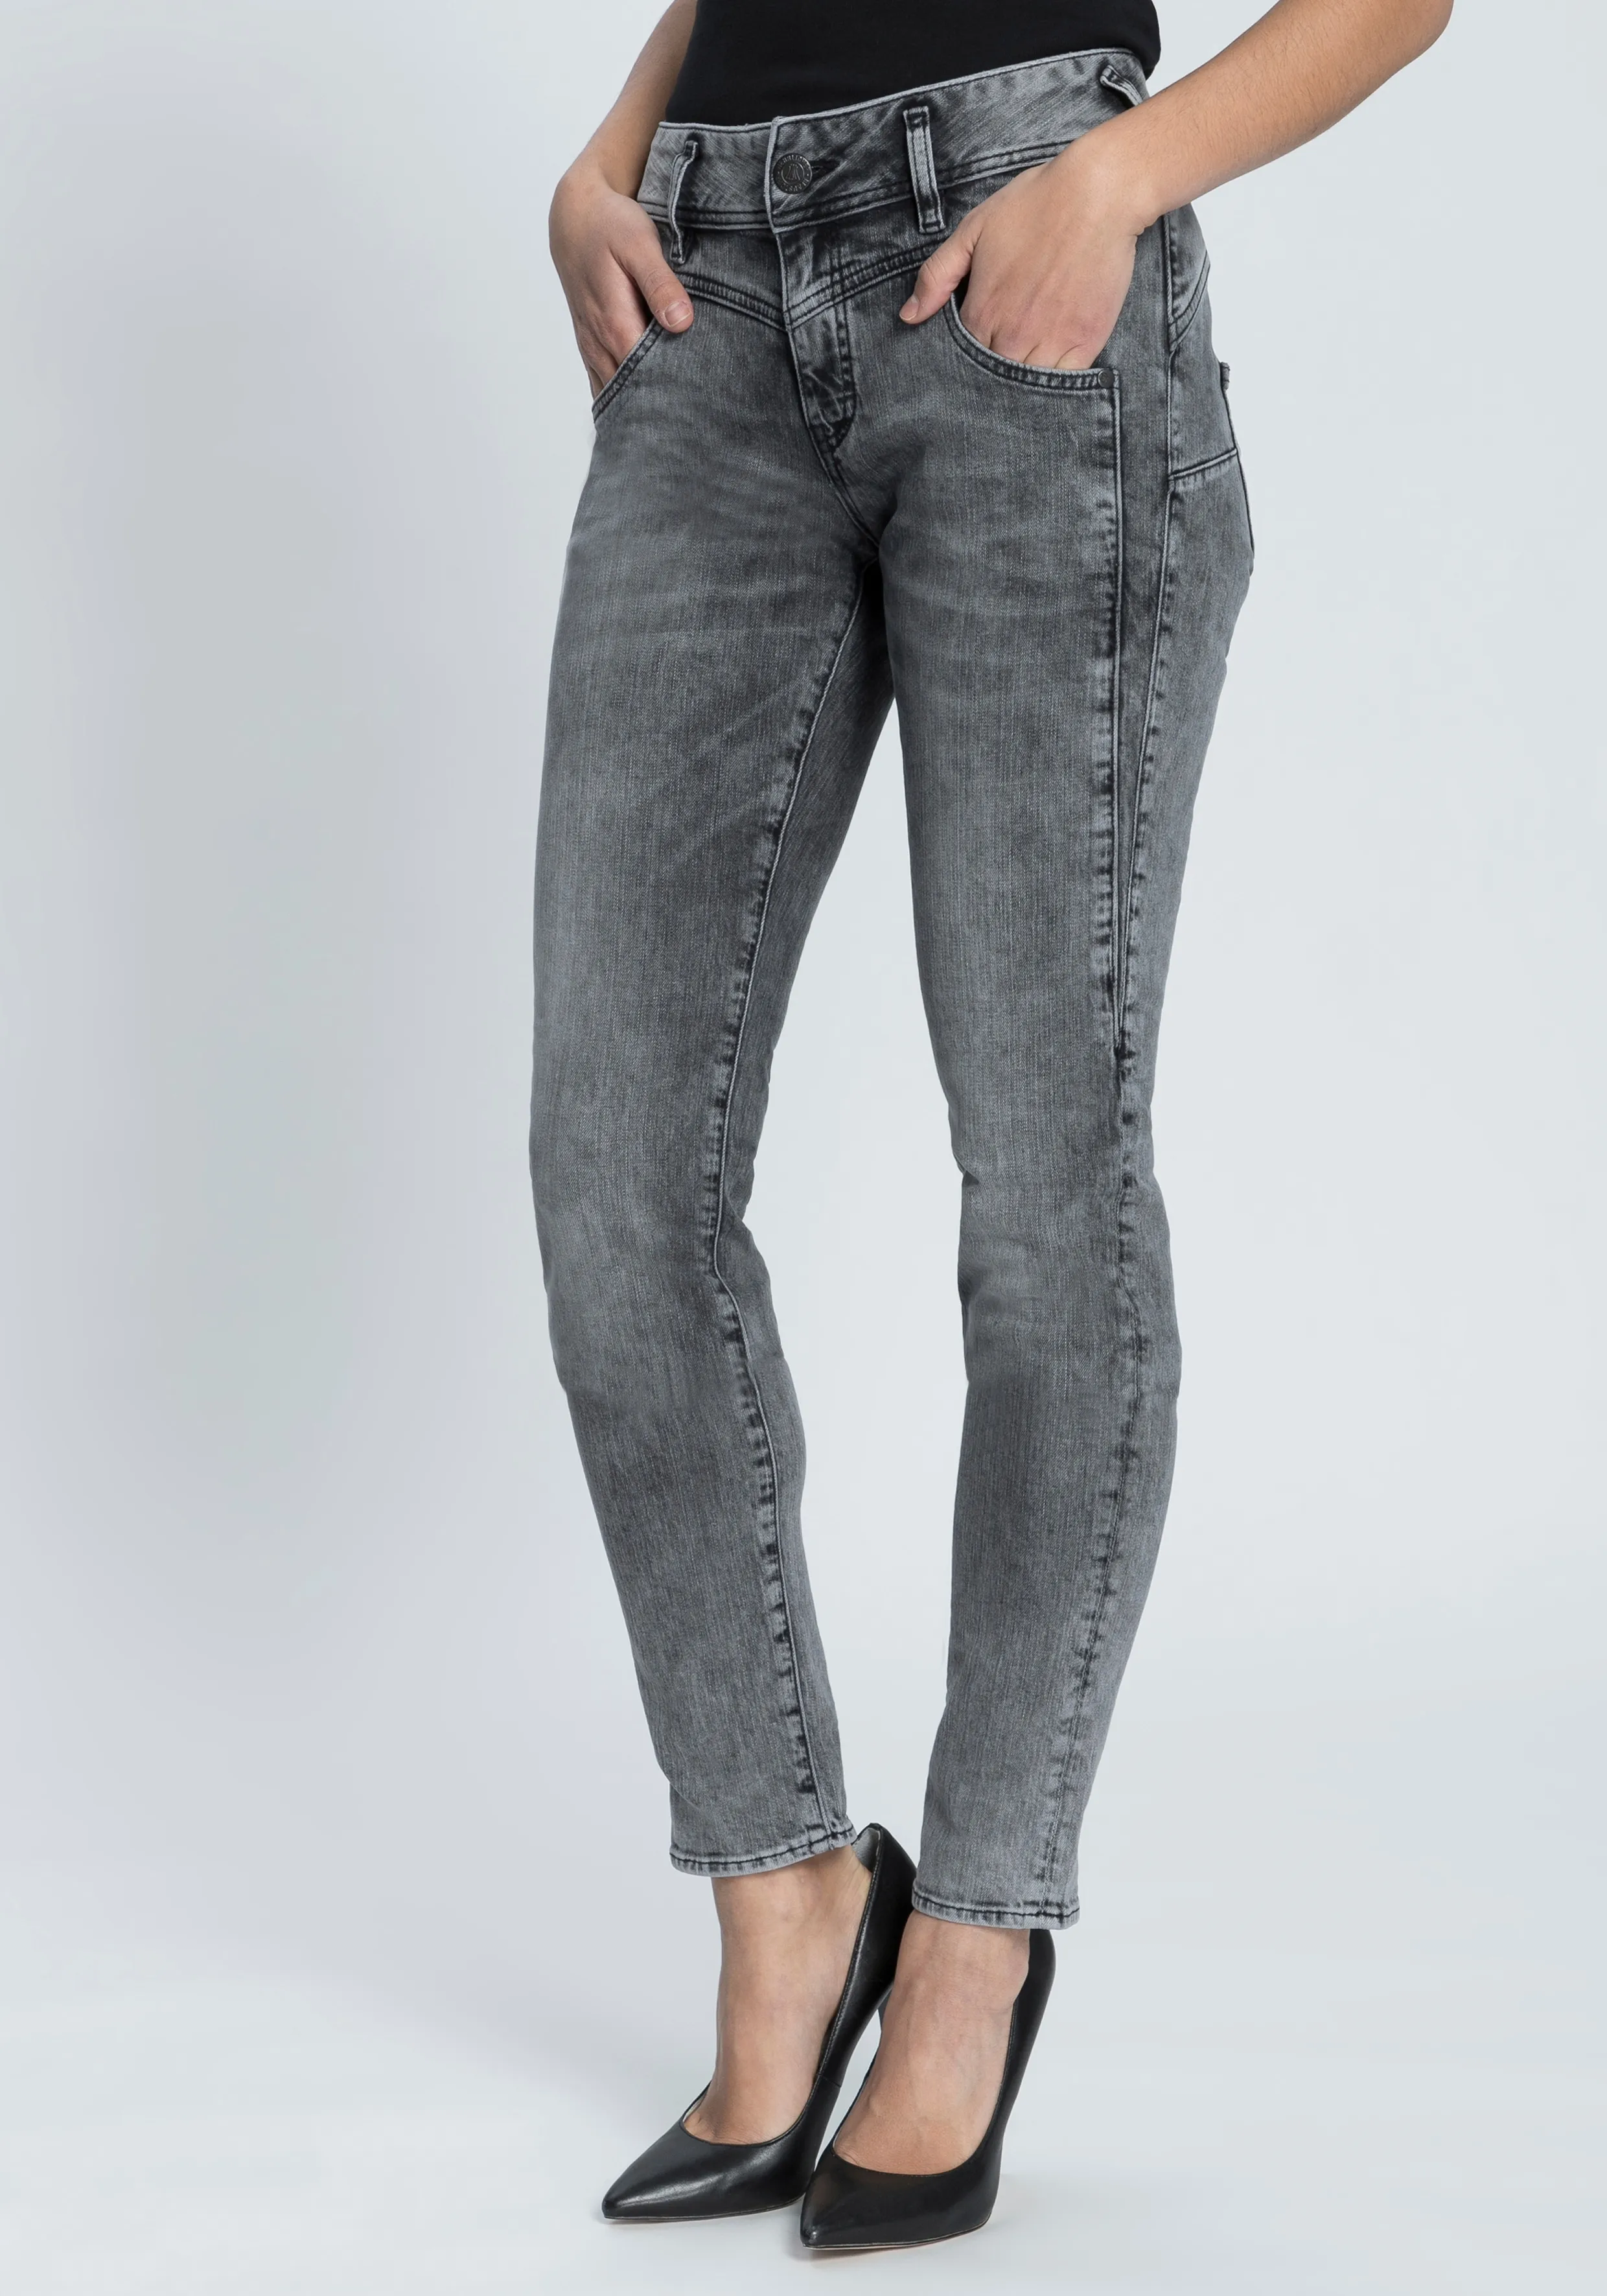 Slim-fit-Jeans HERRLICHER "COSY SLIM" Gr. 26, Länge 30, grau (silent 730) Damen Jeans Röhrenjeans Shaping-Wirkung durch eingearbeiteten Keileinsatz